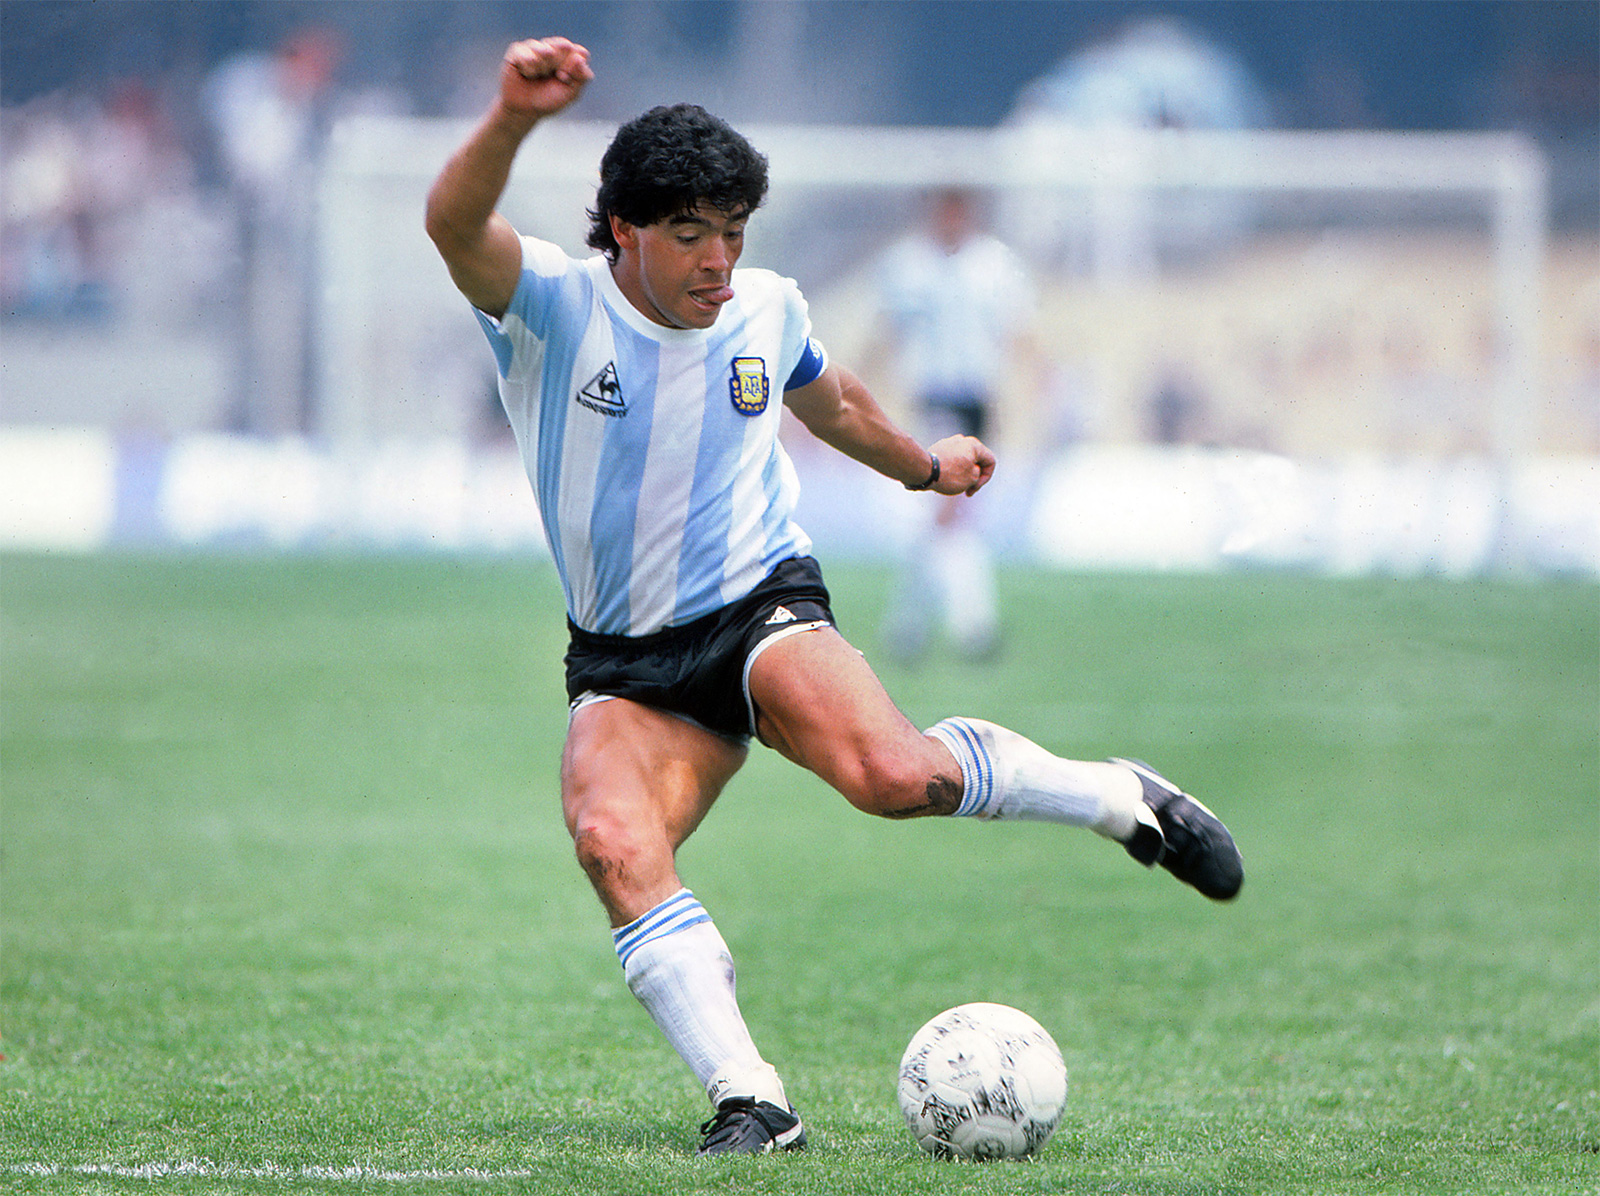 Diego Maradona với niềm đam mê bóng đá từ khi còn nhỏ